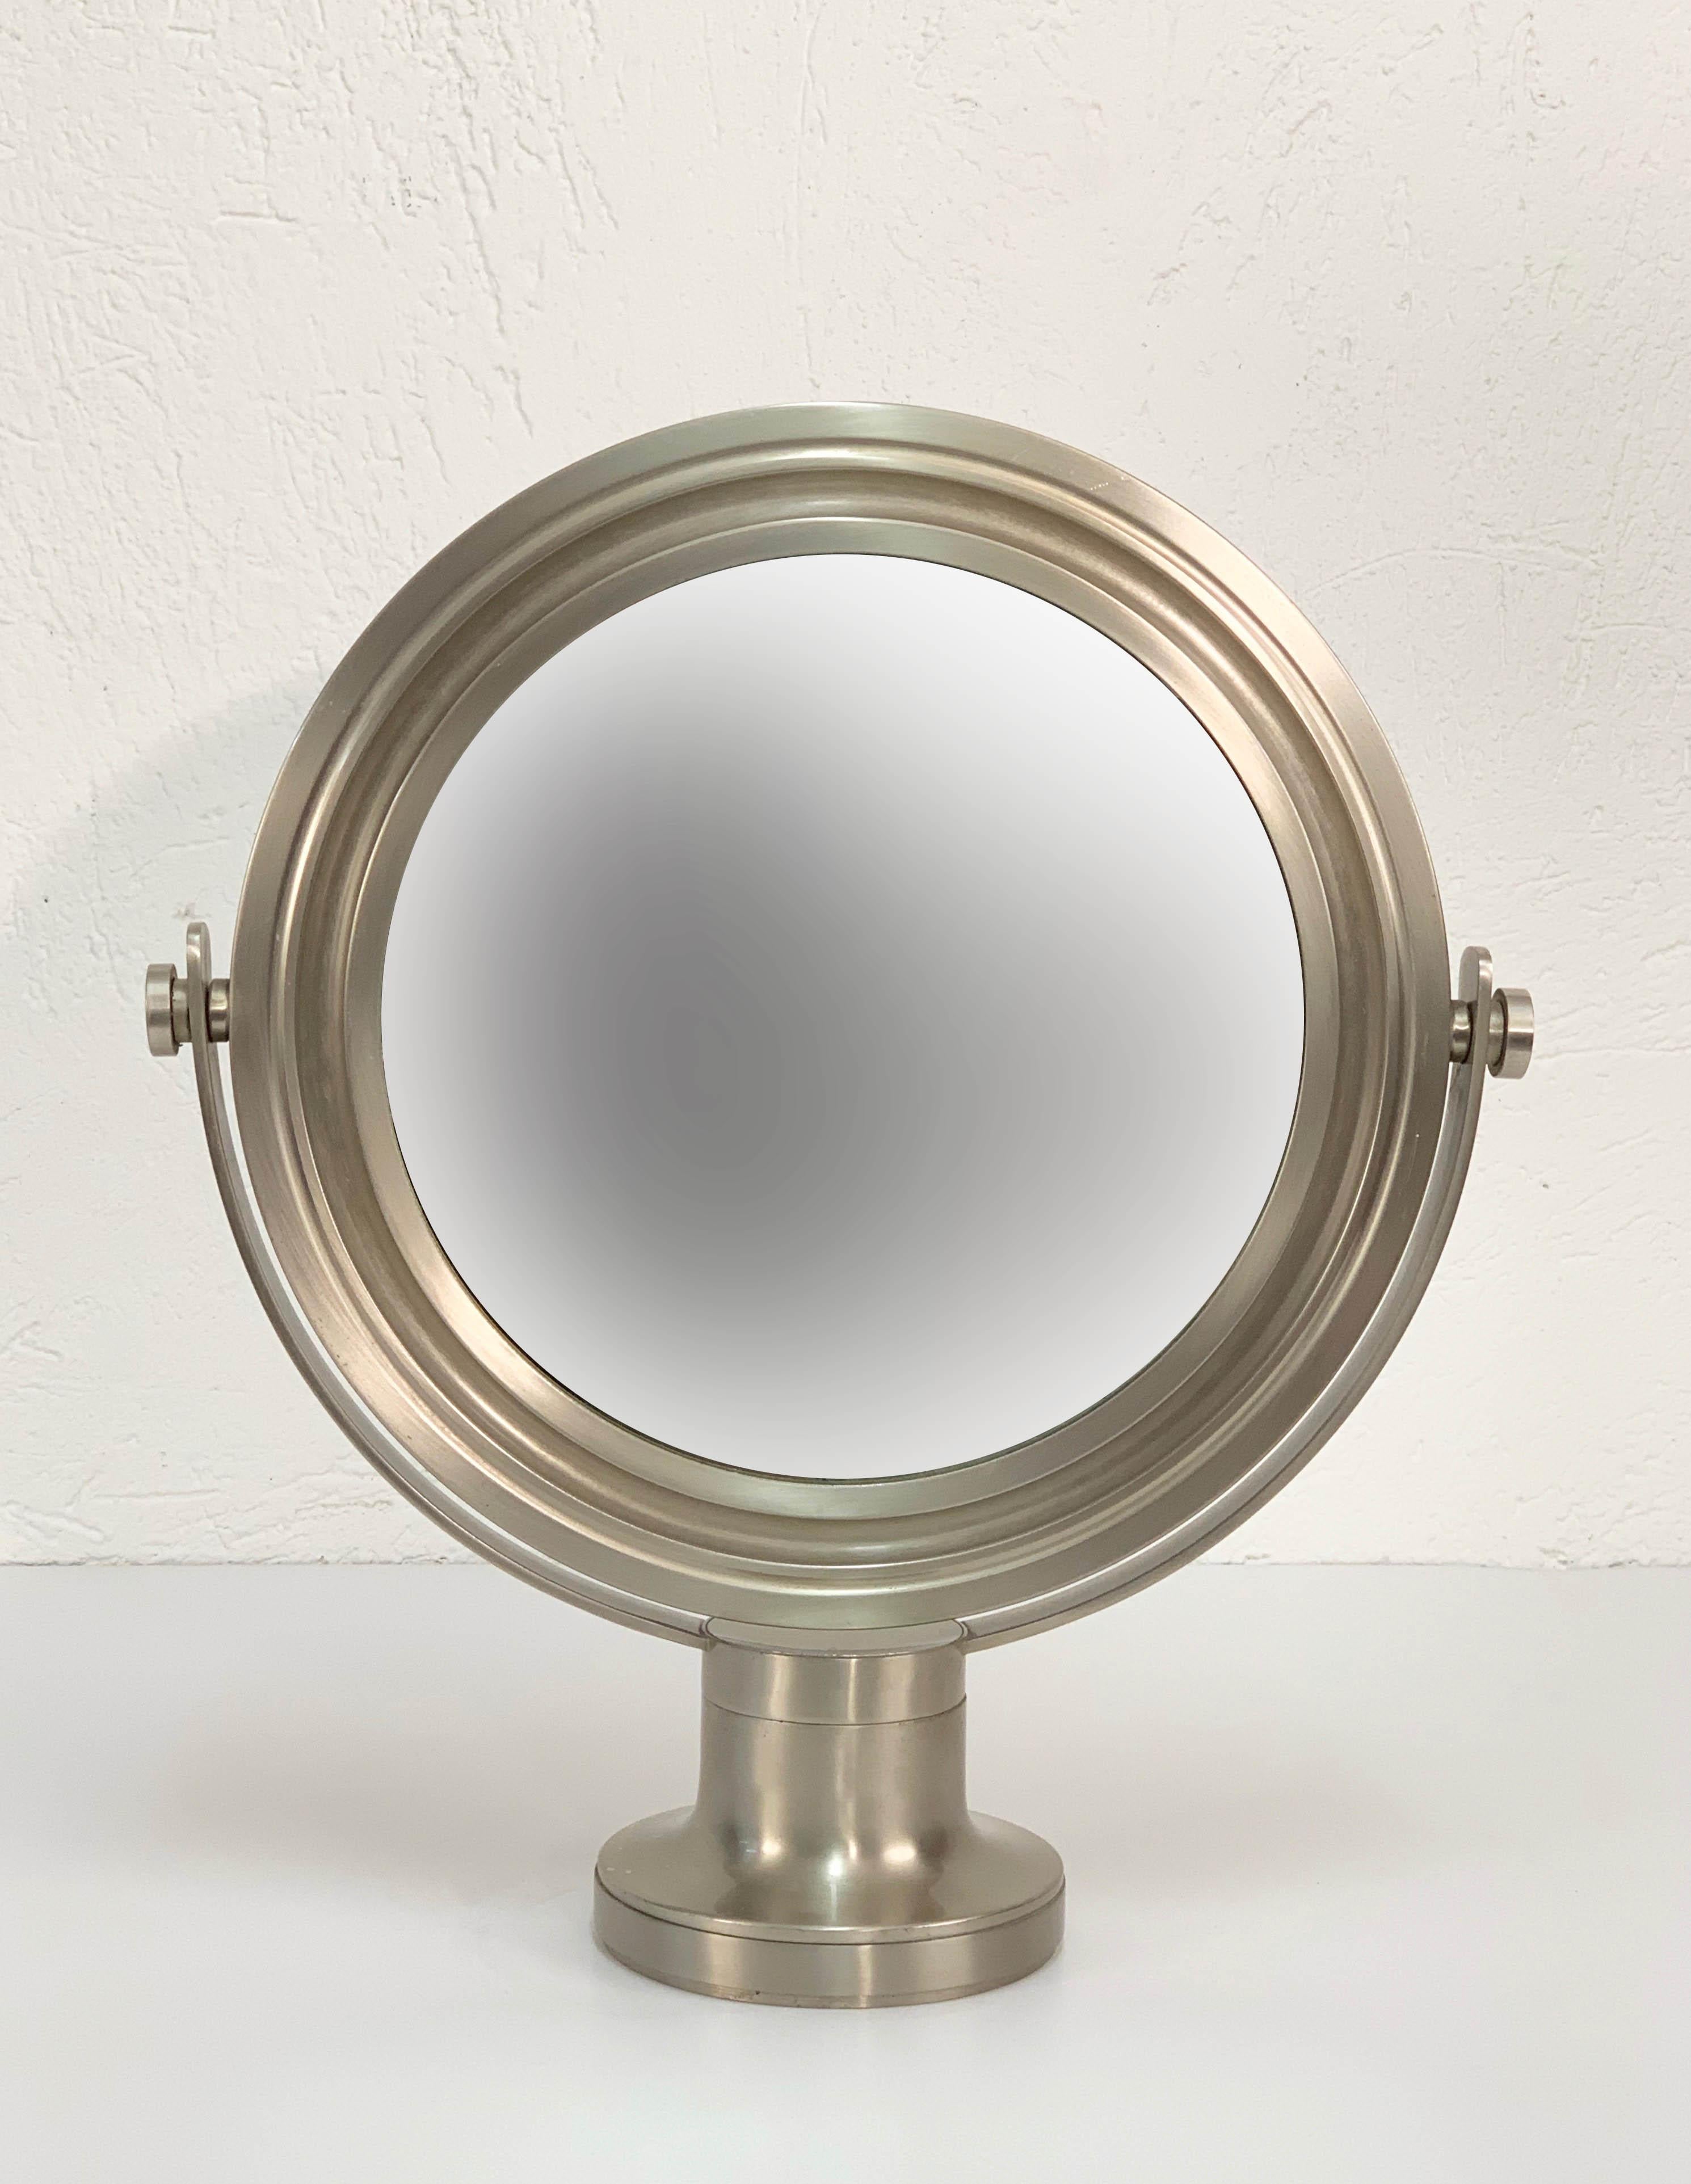 Miroir de table midcentury Sergio Mazza en laiton et nickel pour Artemide, produit en Italie dans les années 1960.

Cette pièce étonnante est composée d'un miroir tournant en laiton nickelé et stérilisé sur une petite base. L'état est excellent